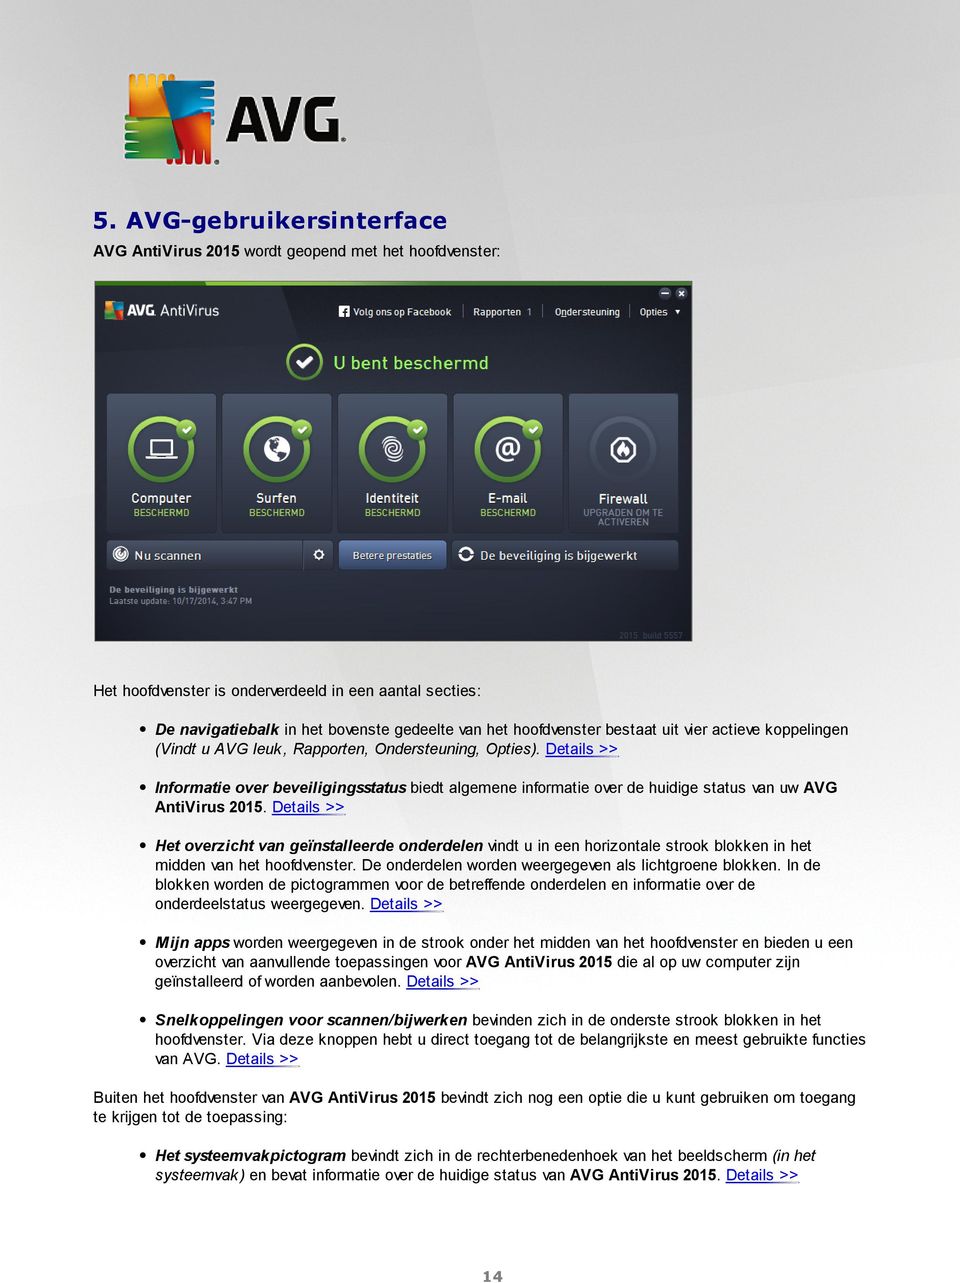 Details >> Informatie over beveiligingsstatus biedt algemene informatie over de huidige status van uw AVG AntiVirus 2015.